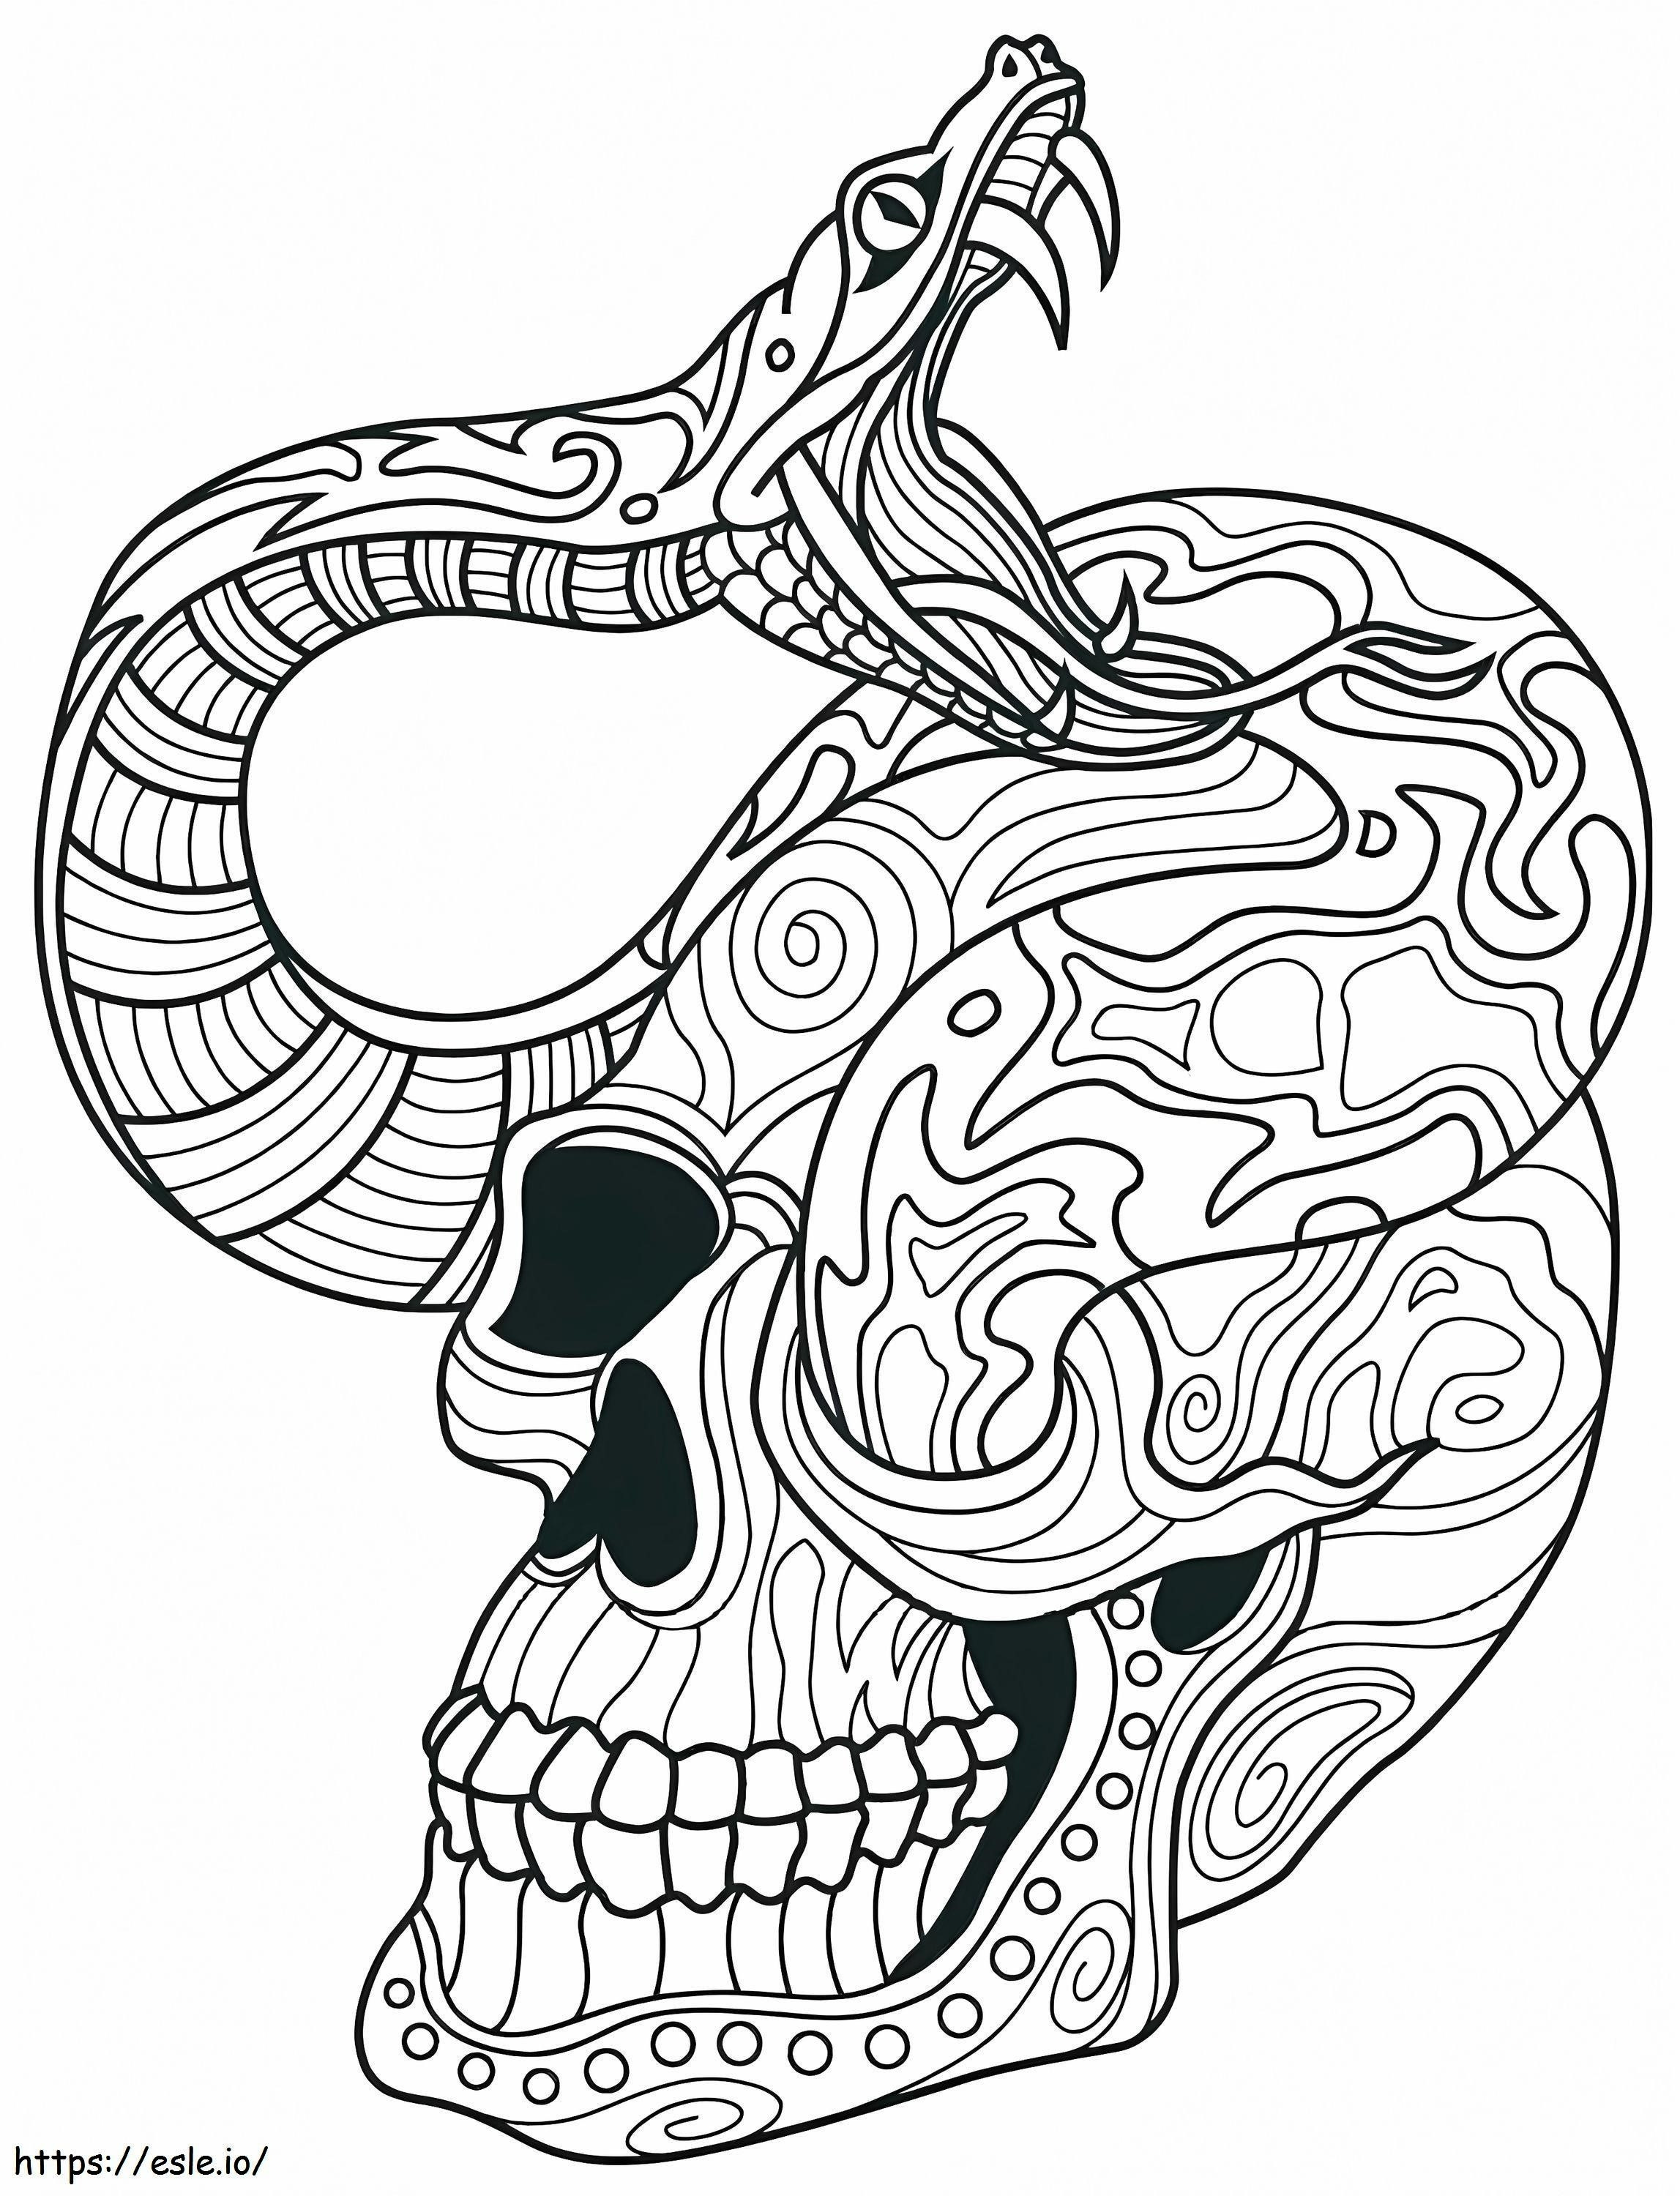 Coloriage 1539920986 Jour du crâne mort Jour des crânes morts Jour du serpent mort Jour du crâne de fille morte à imprimer dessin